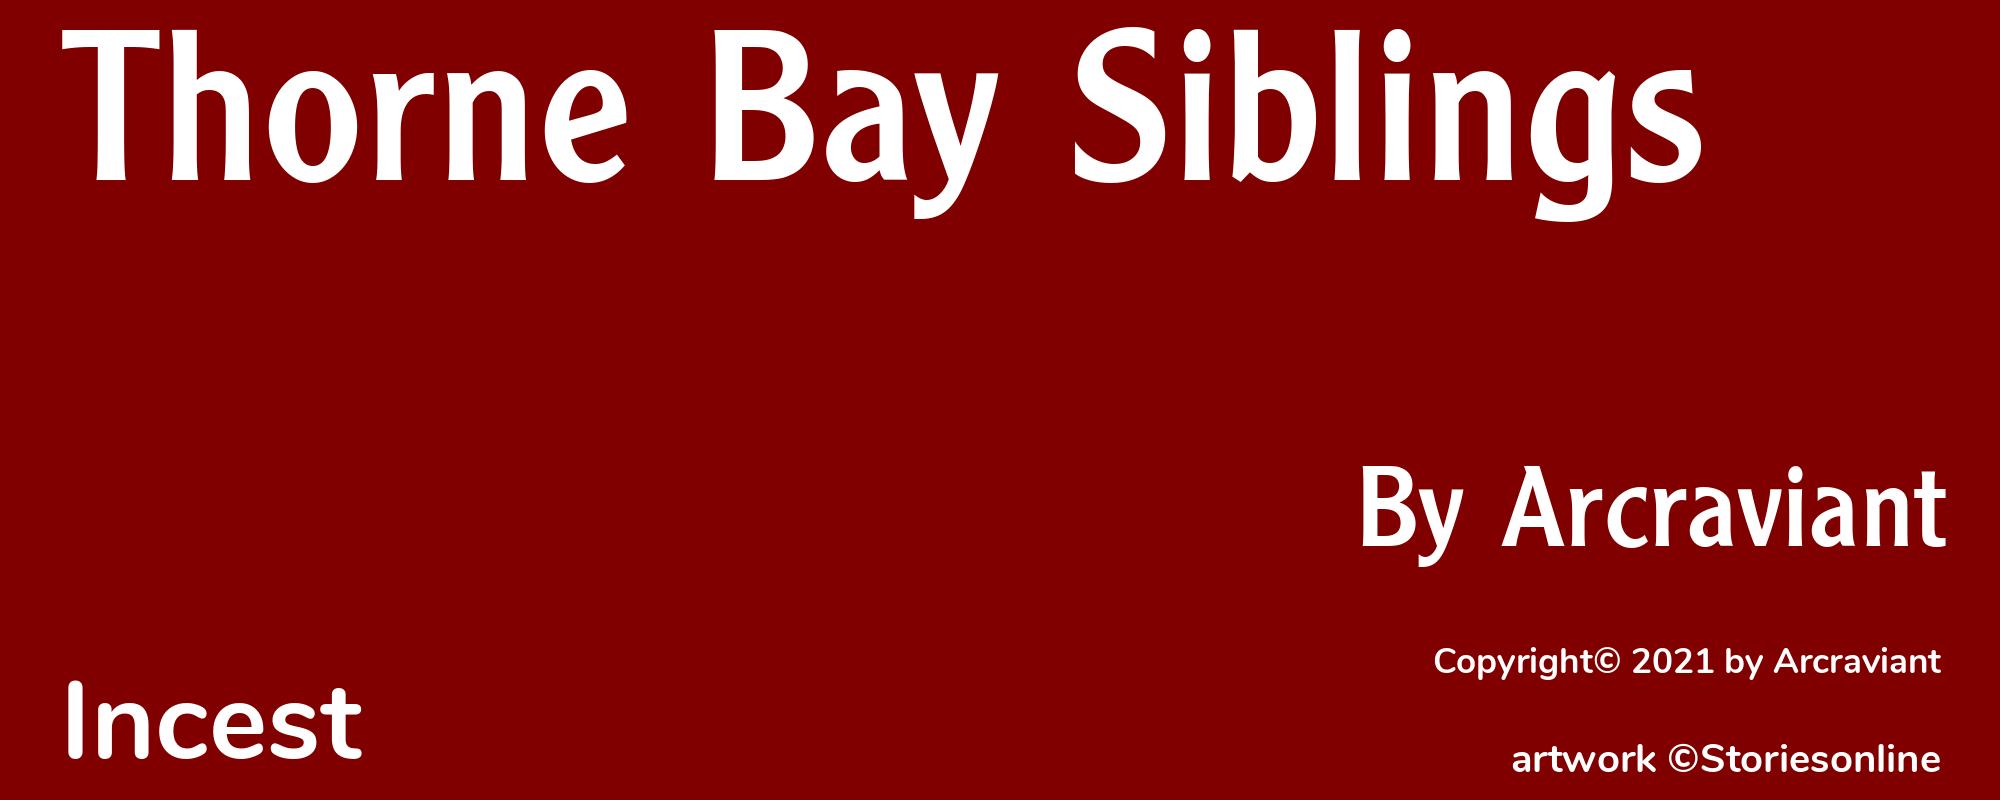 Thorne Bay Siblings - Cover